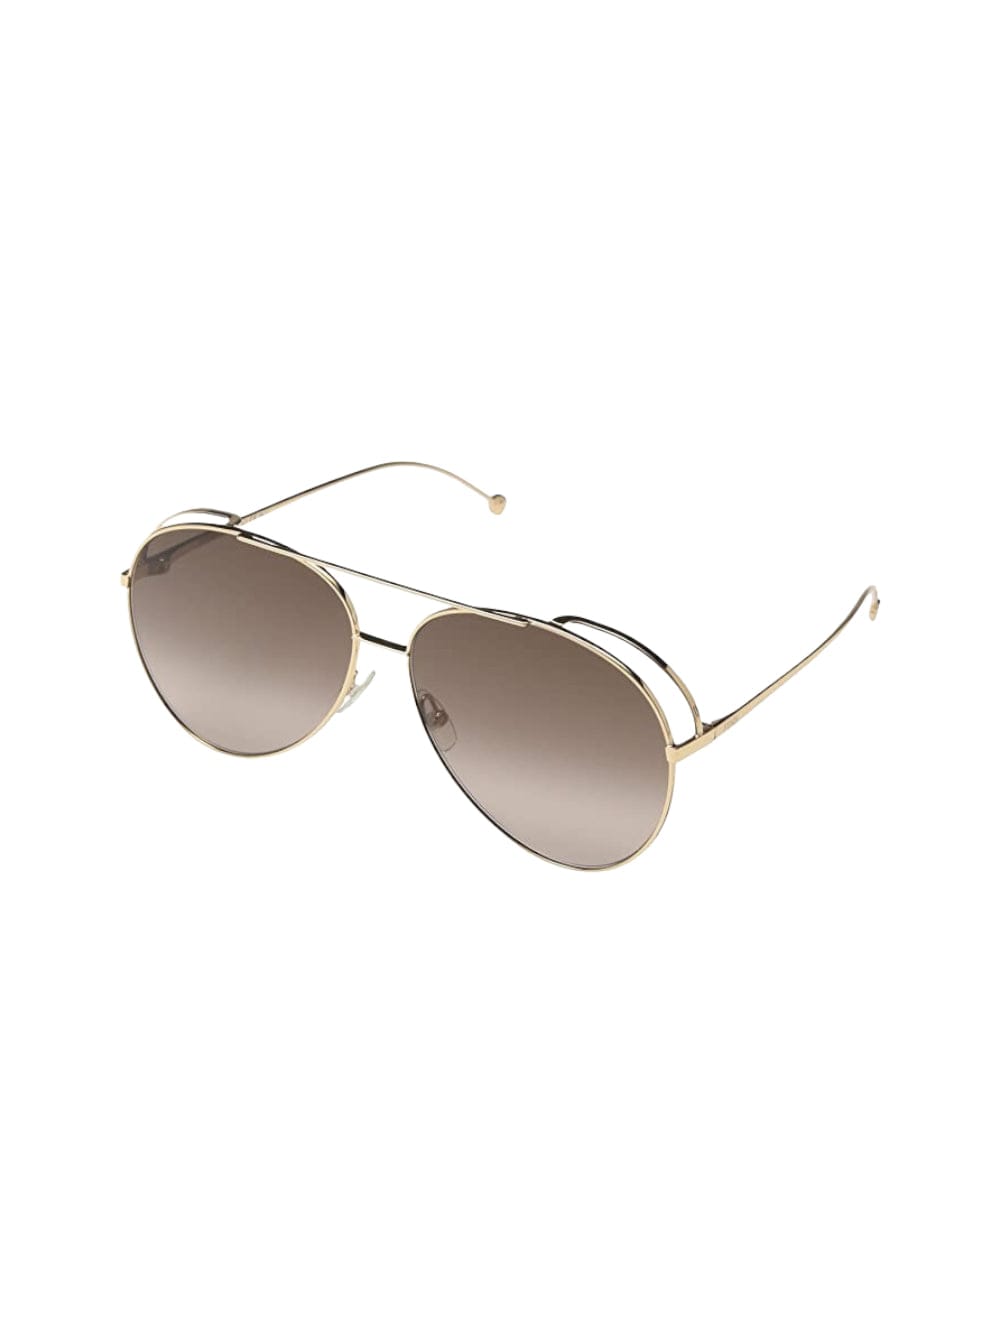 Fendi Ff 0286 - Gold Sunglasses